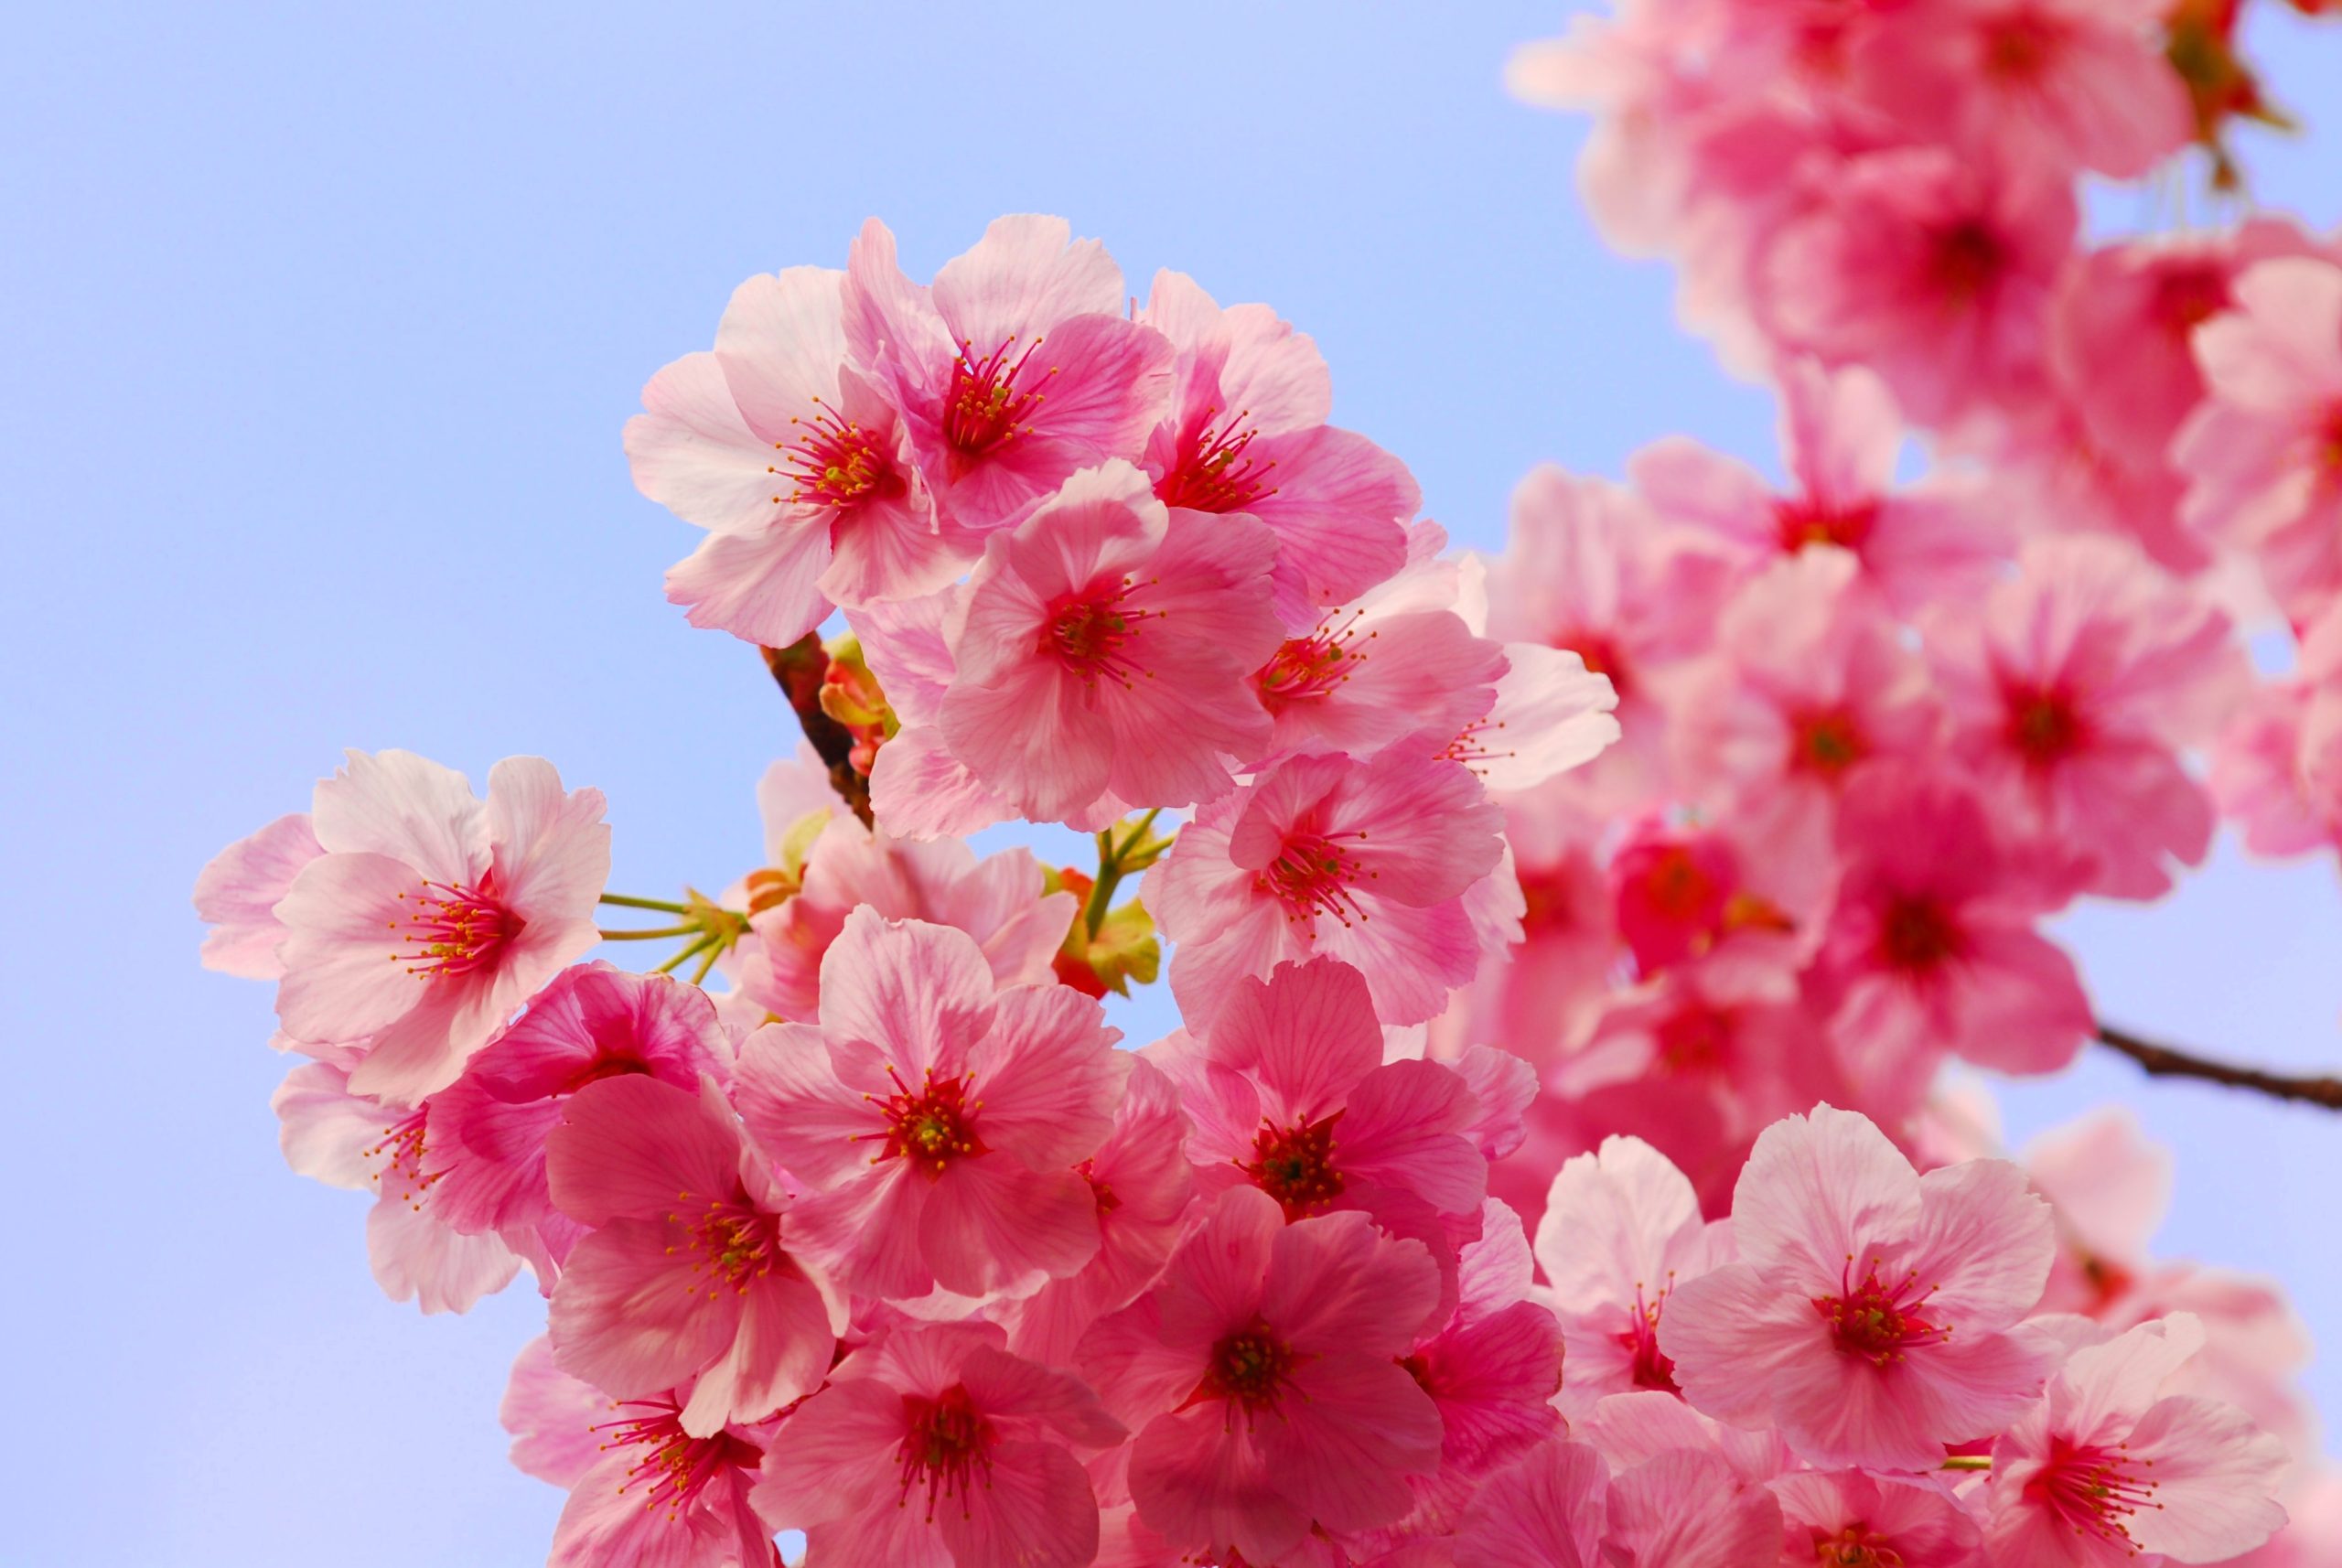 [HOT] Top 77 hình nền hoa đào đẹp nhất cho năm mới may mắn - Trường THPT Kẻ Sặt